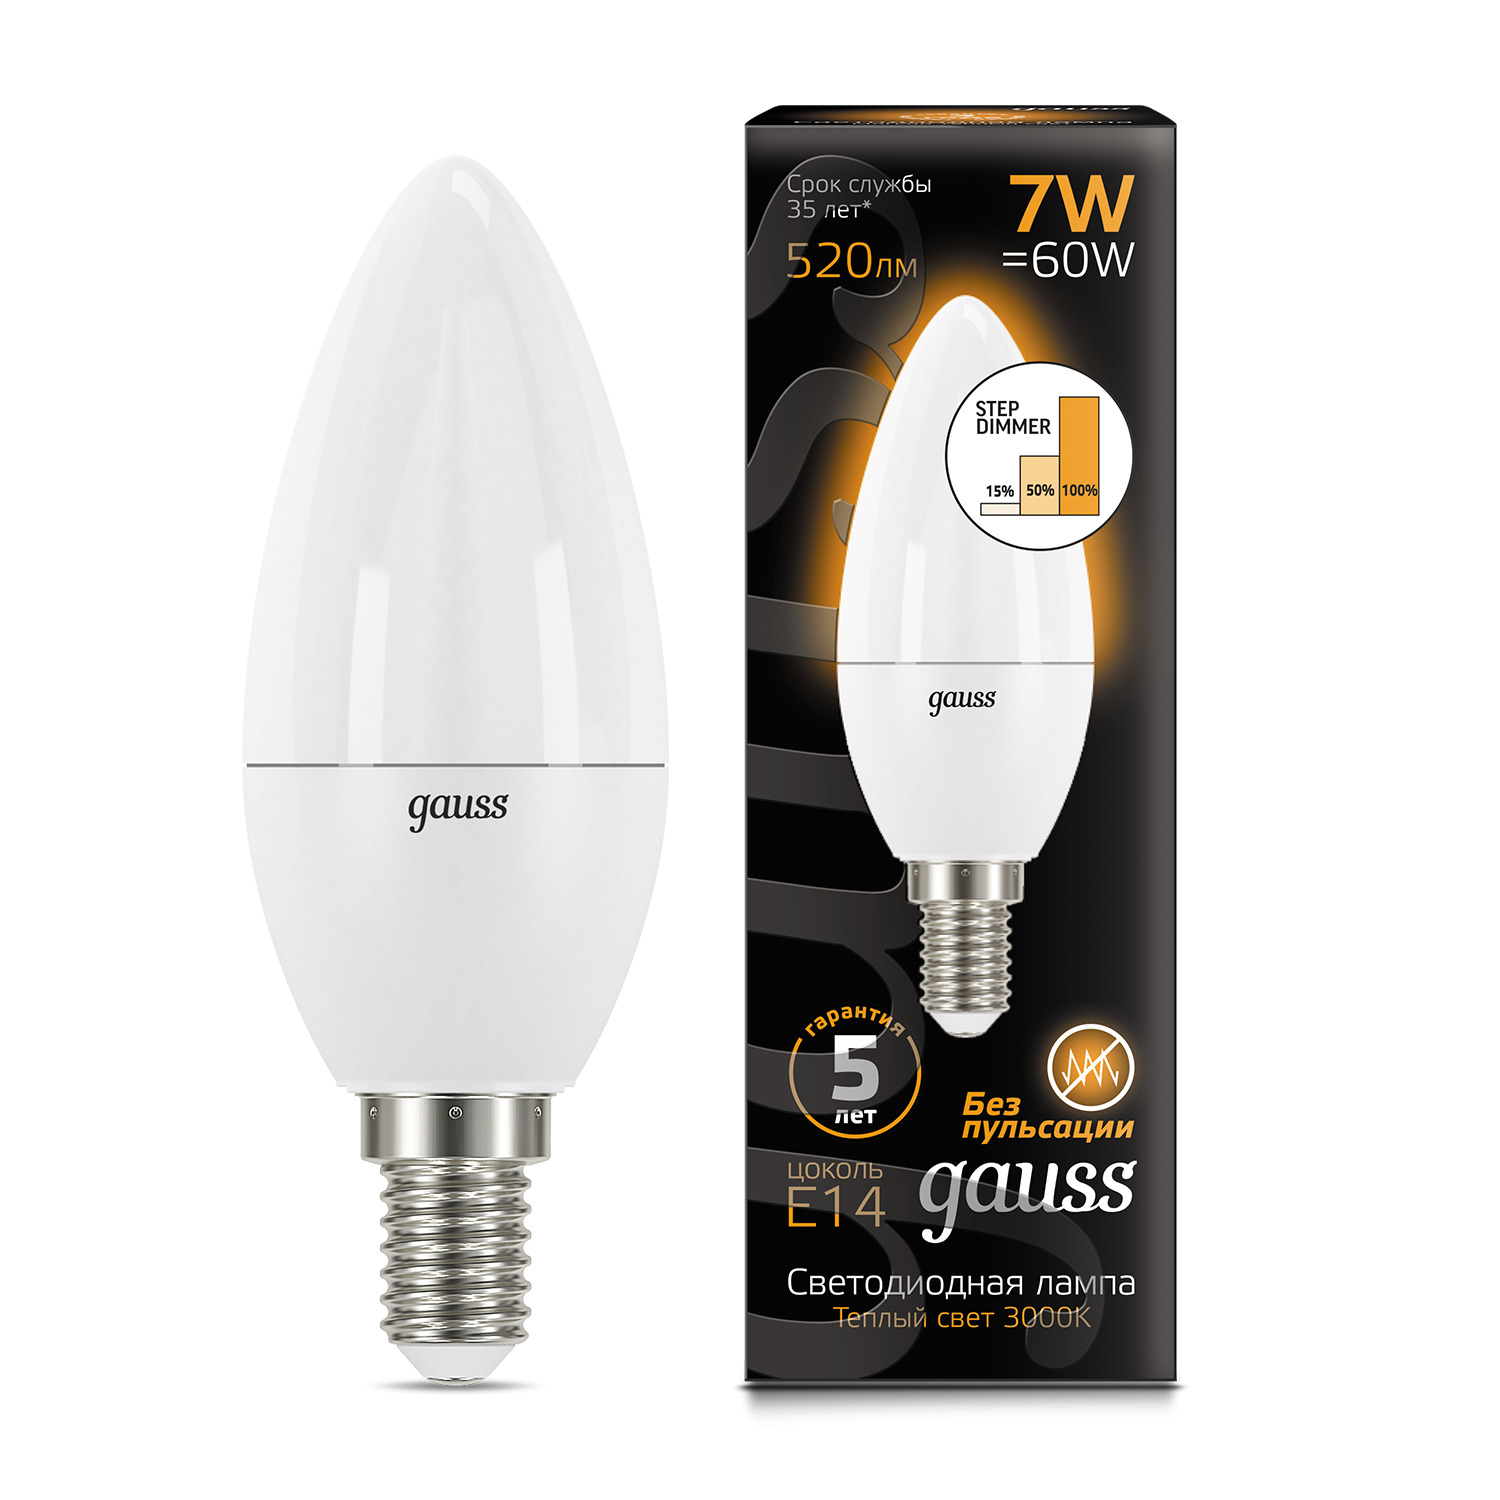 Лампа Gauss LED Свеча E14 7W 520lm 3000К step dimmable 1/10/100 лампа gauss led filament свеча на ветру e14 7w 580lm 4100k step dimmable 1 10 50